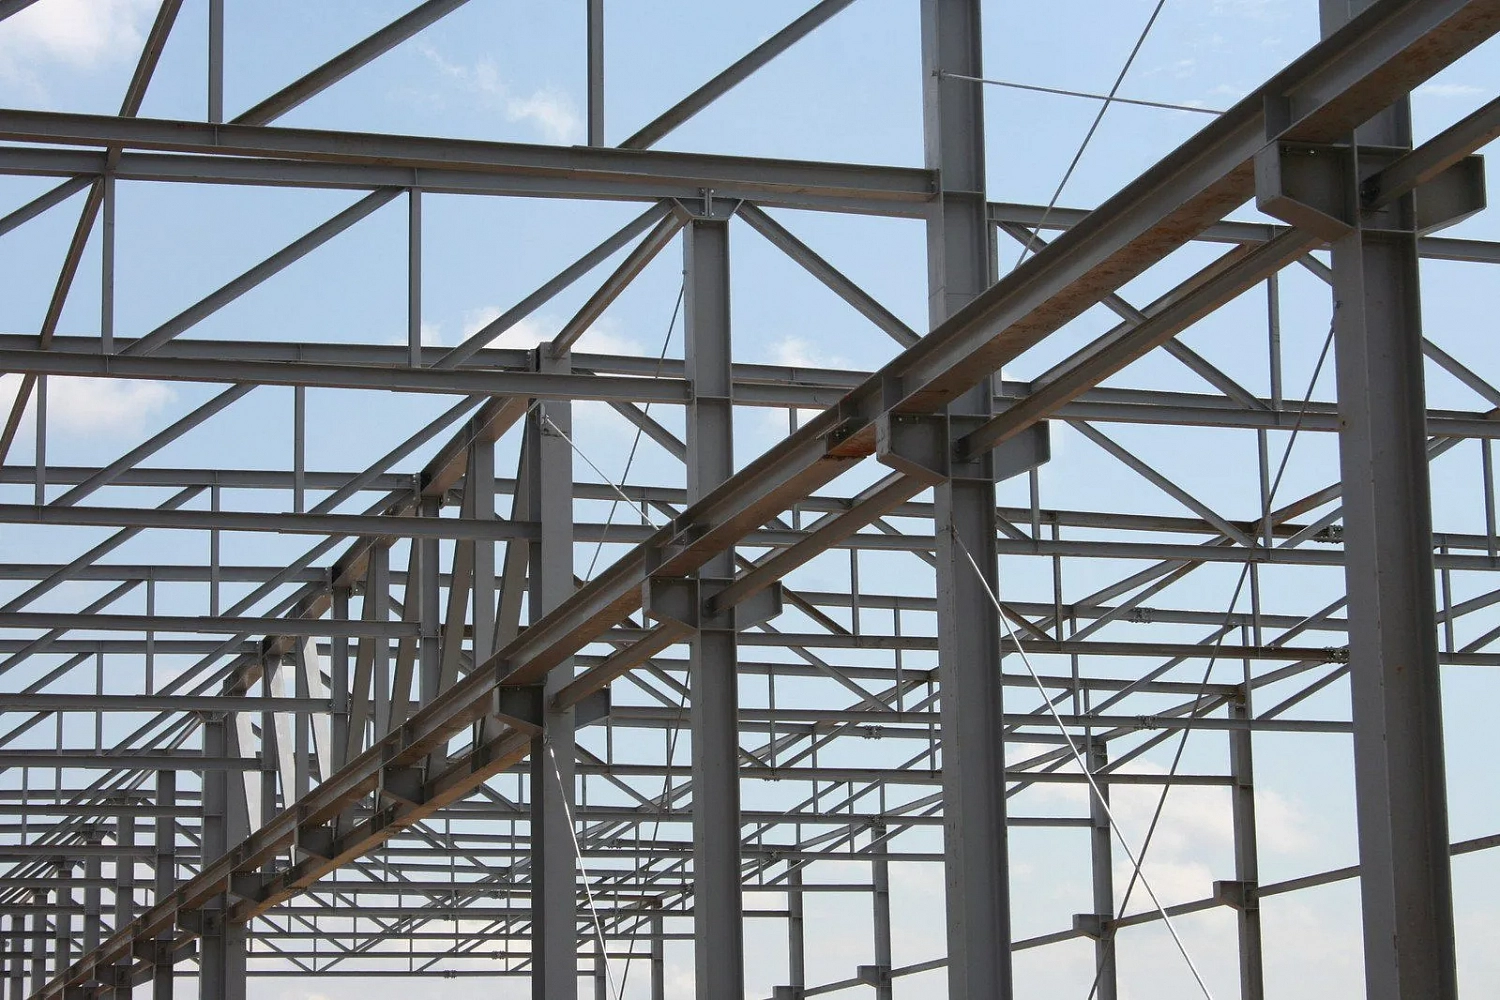 Строительство металлоконструкций – от швеллера до готового здания